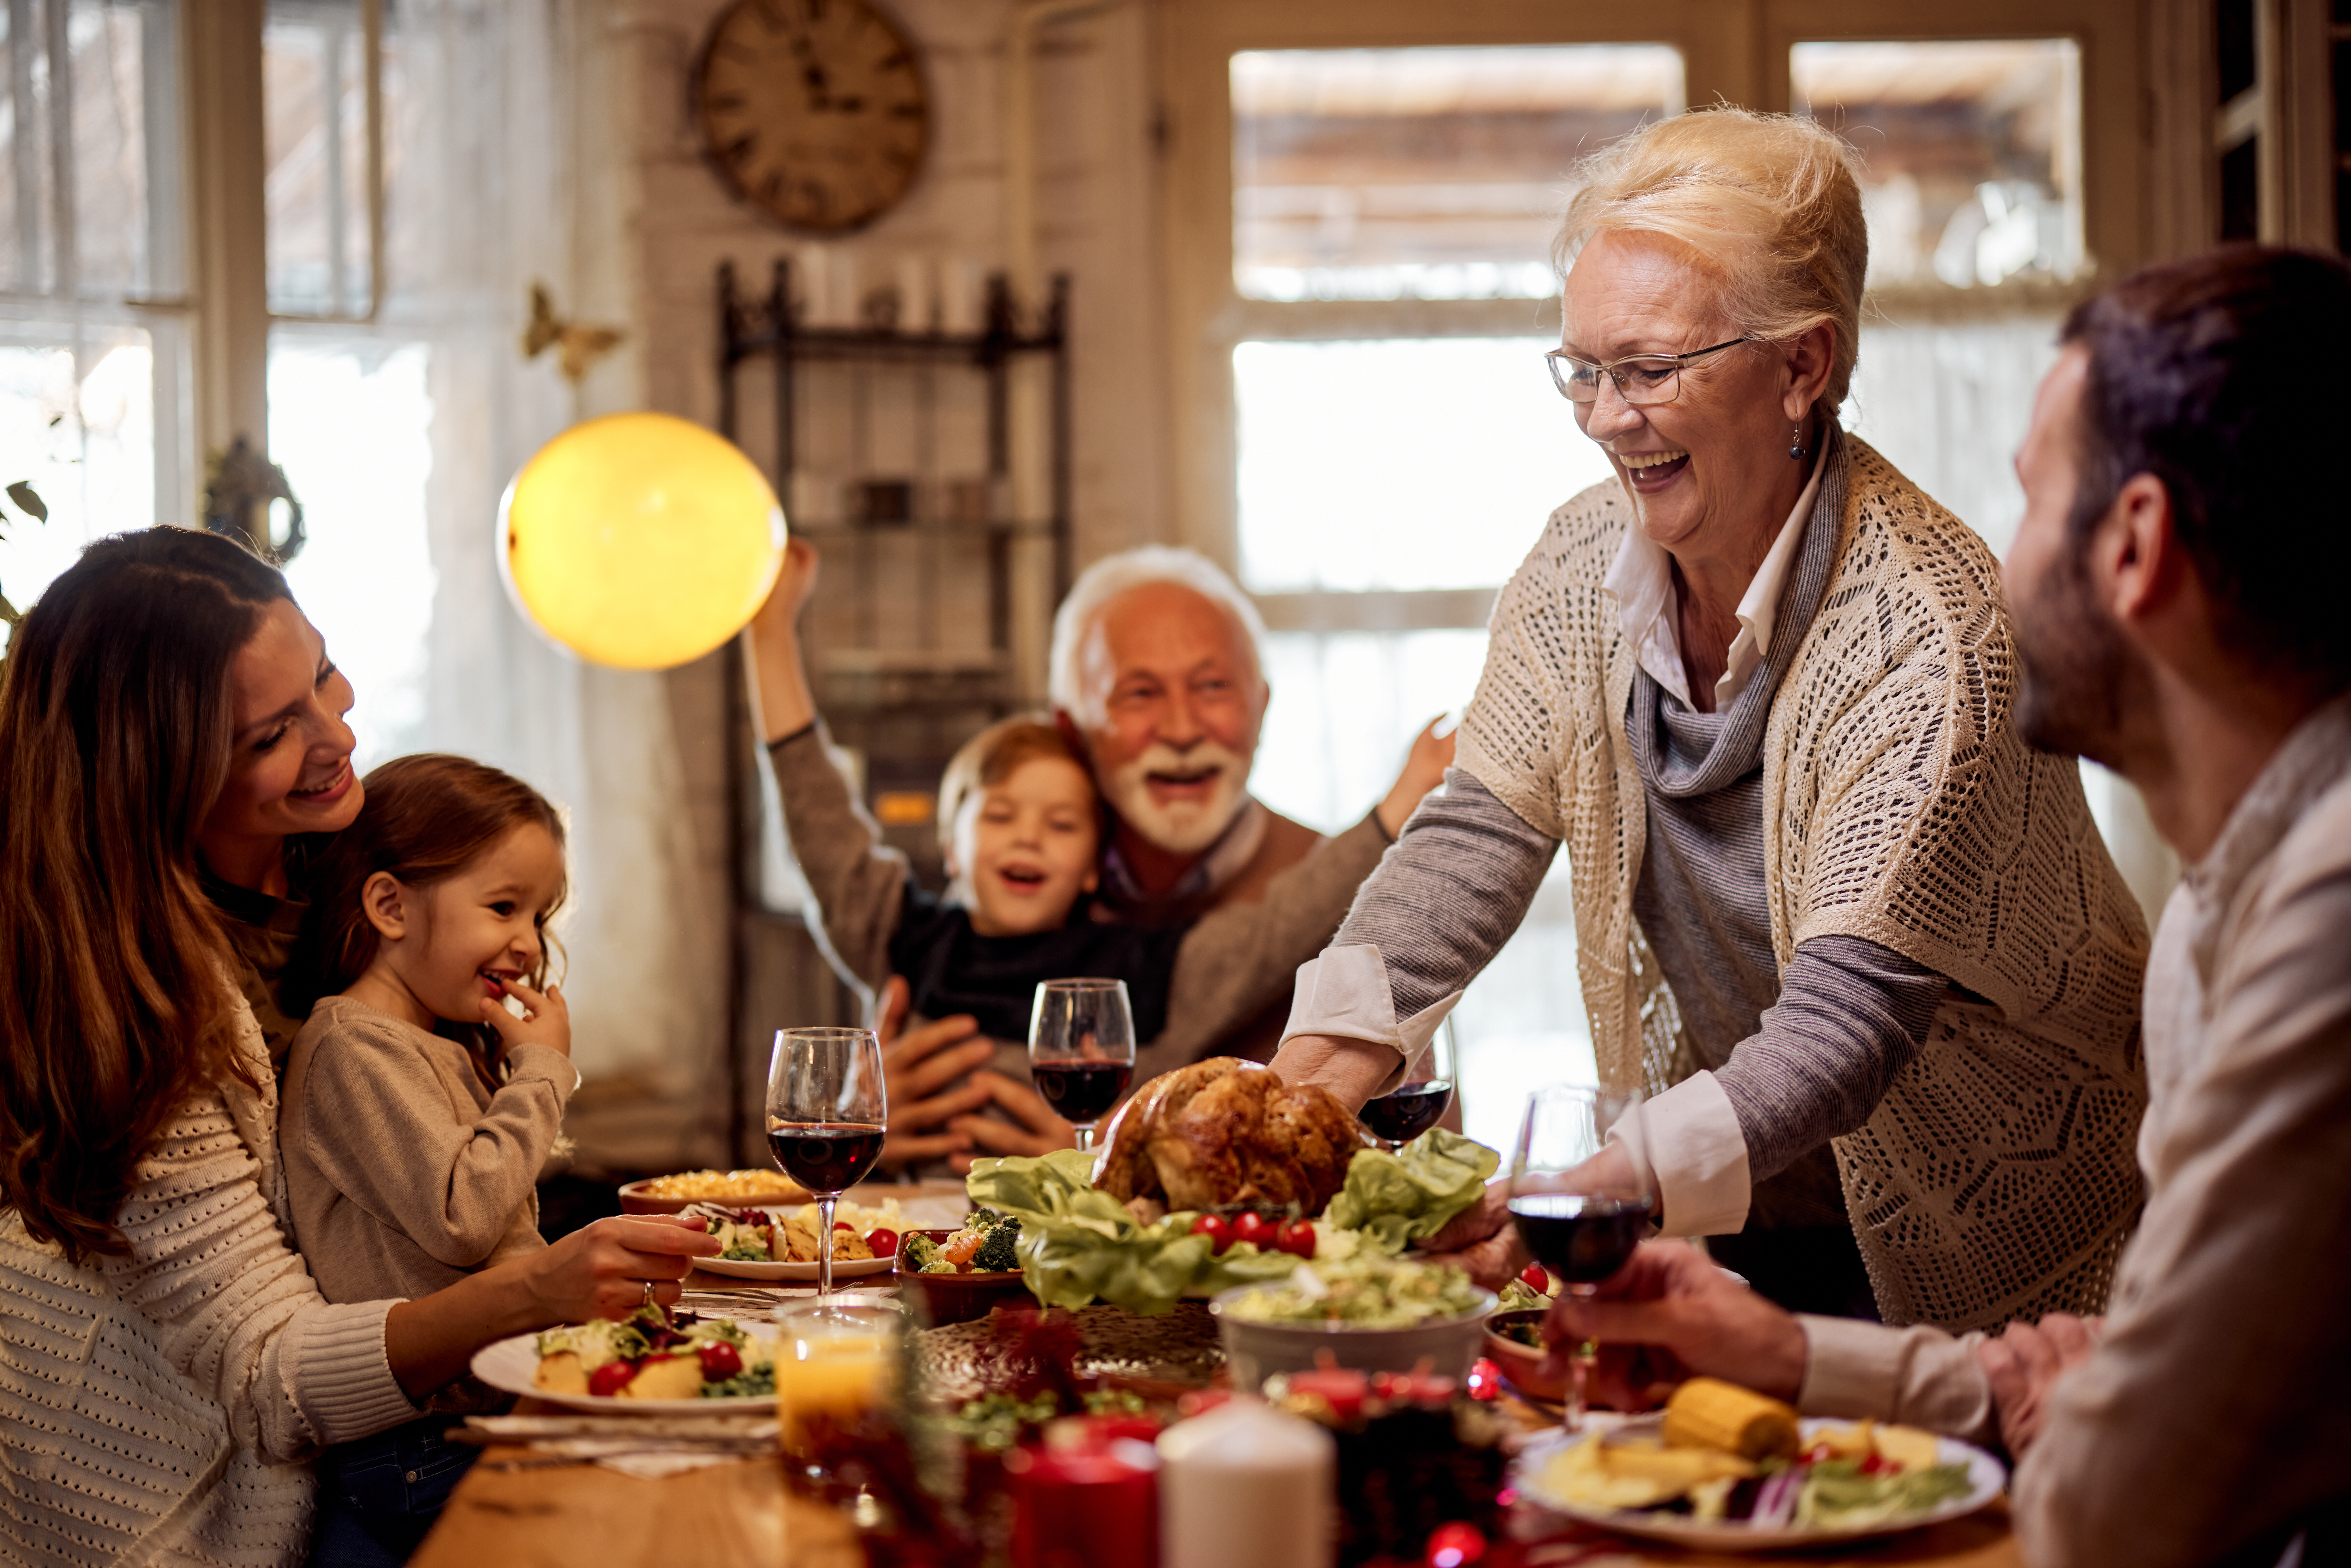 Une femme âgée heureuse sert un repas à sa famille dans la salle à manger | Source : Getty Images